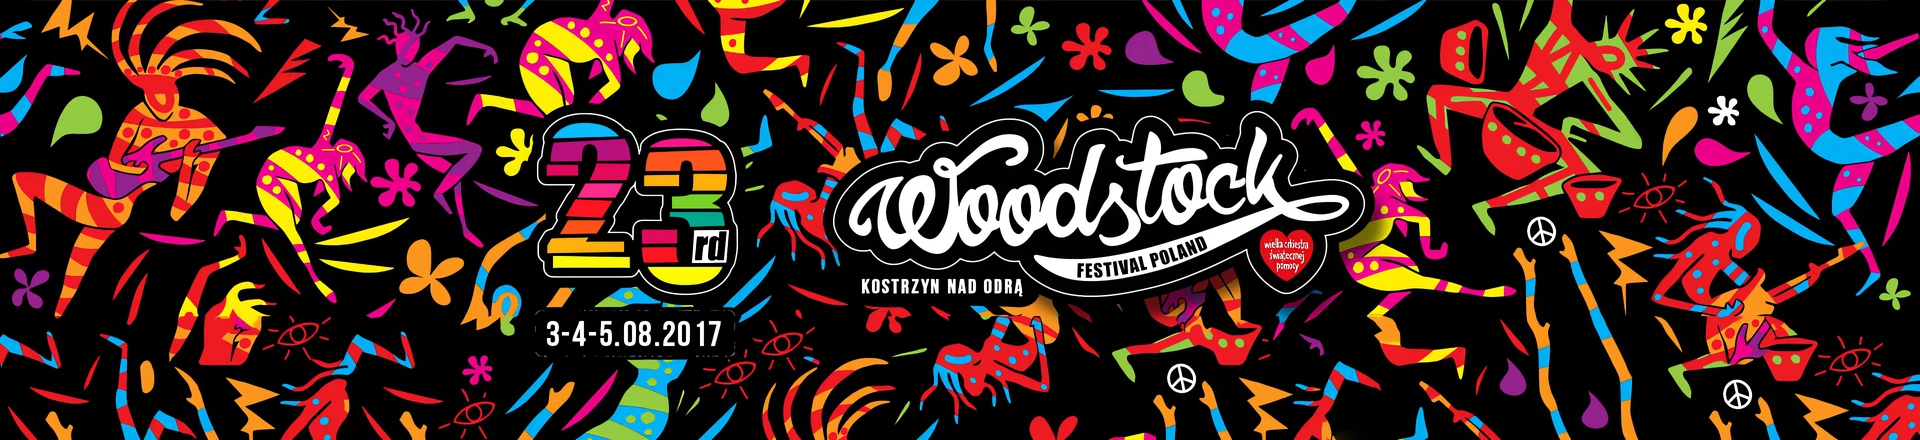 RELACJA: Przystanek Woodstock 2017 